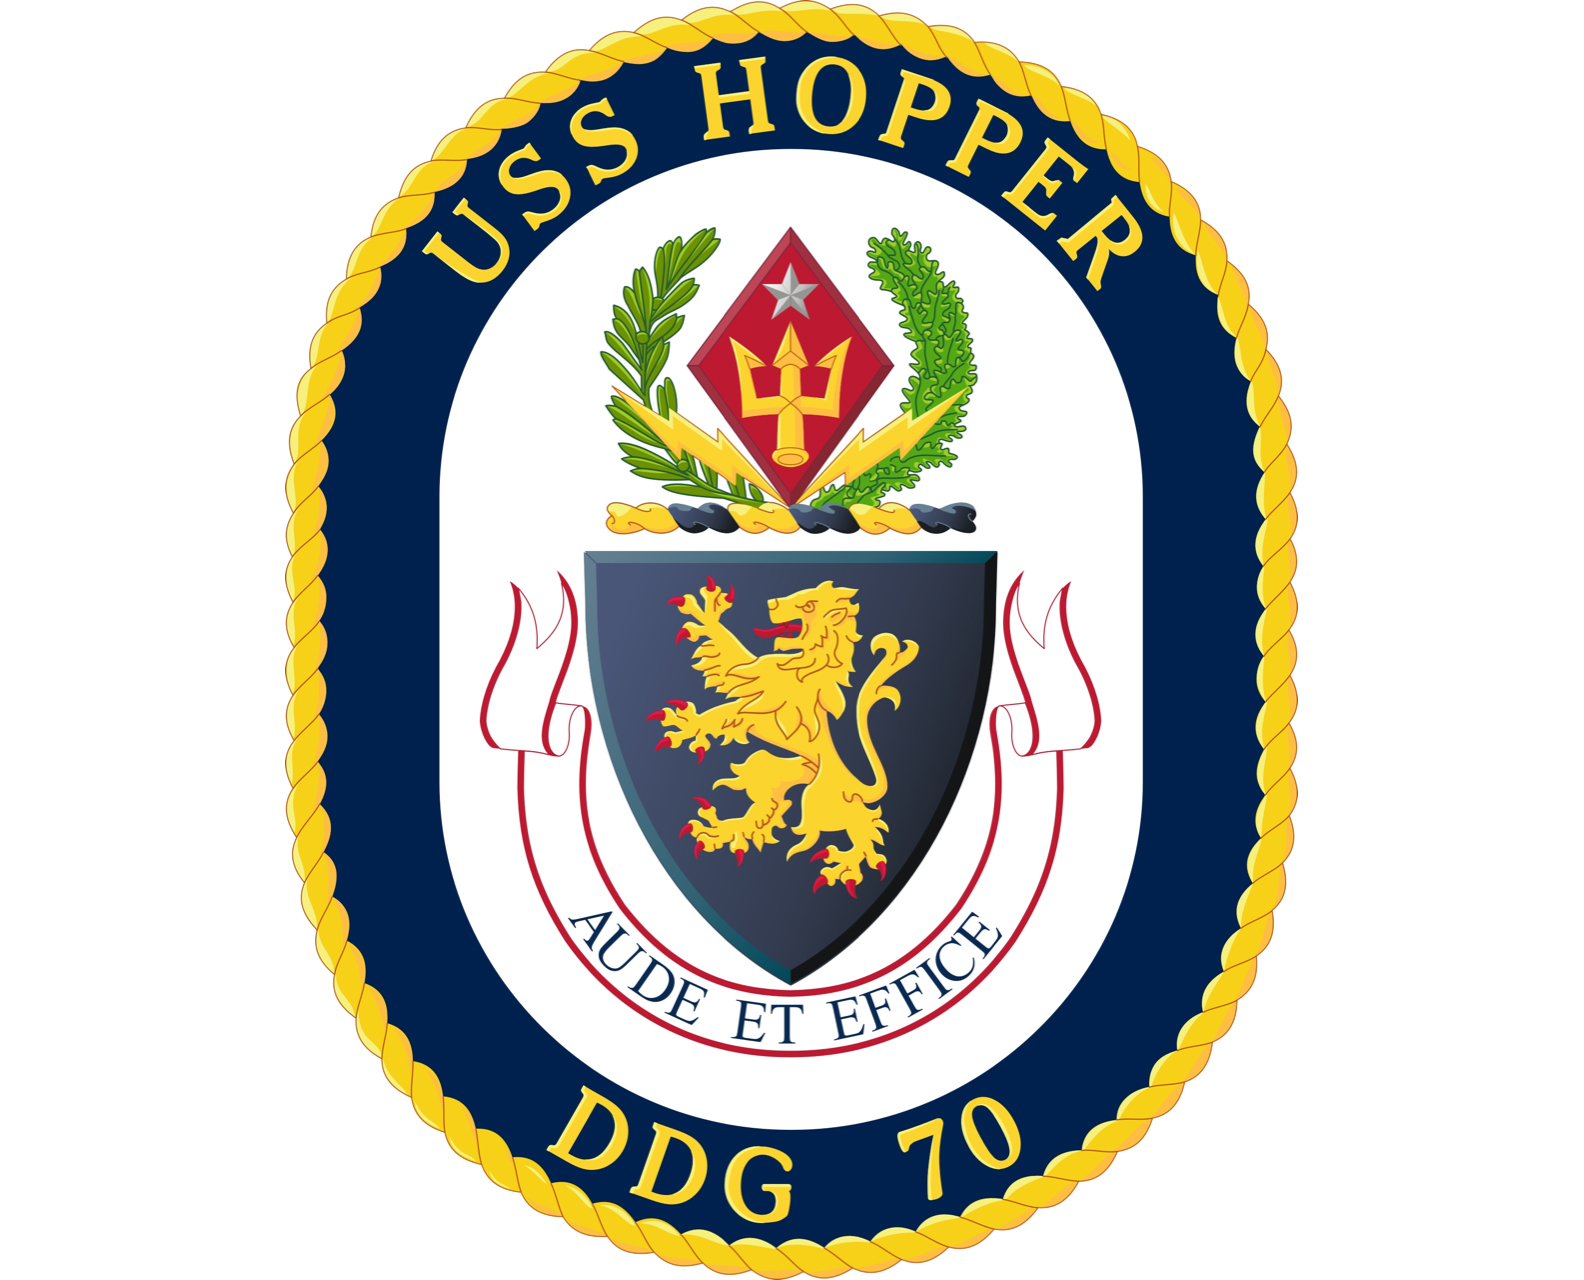 USS Hopper crest